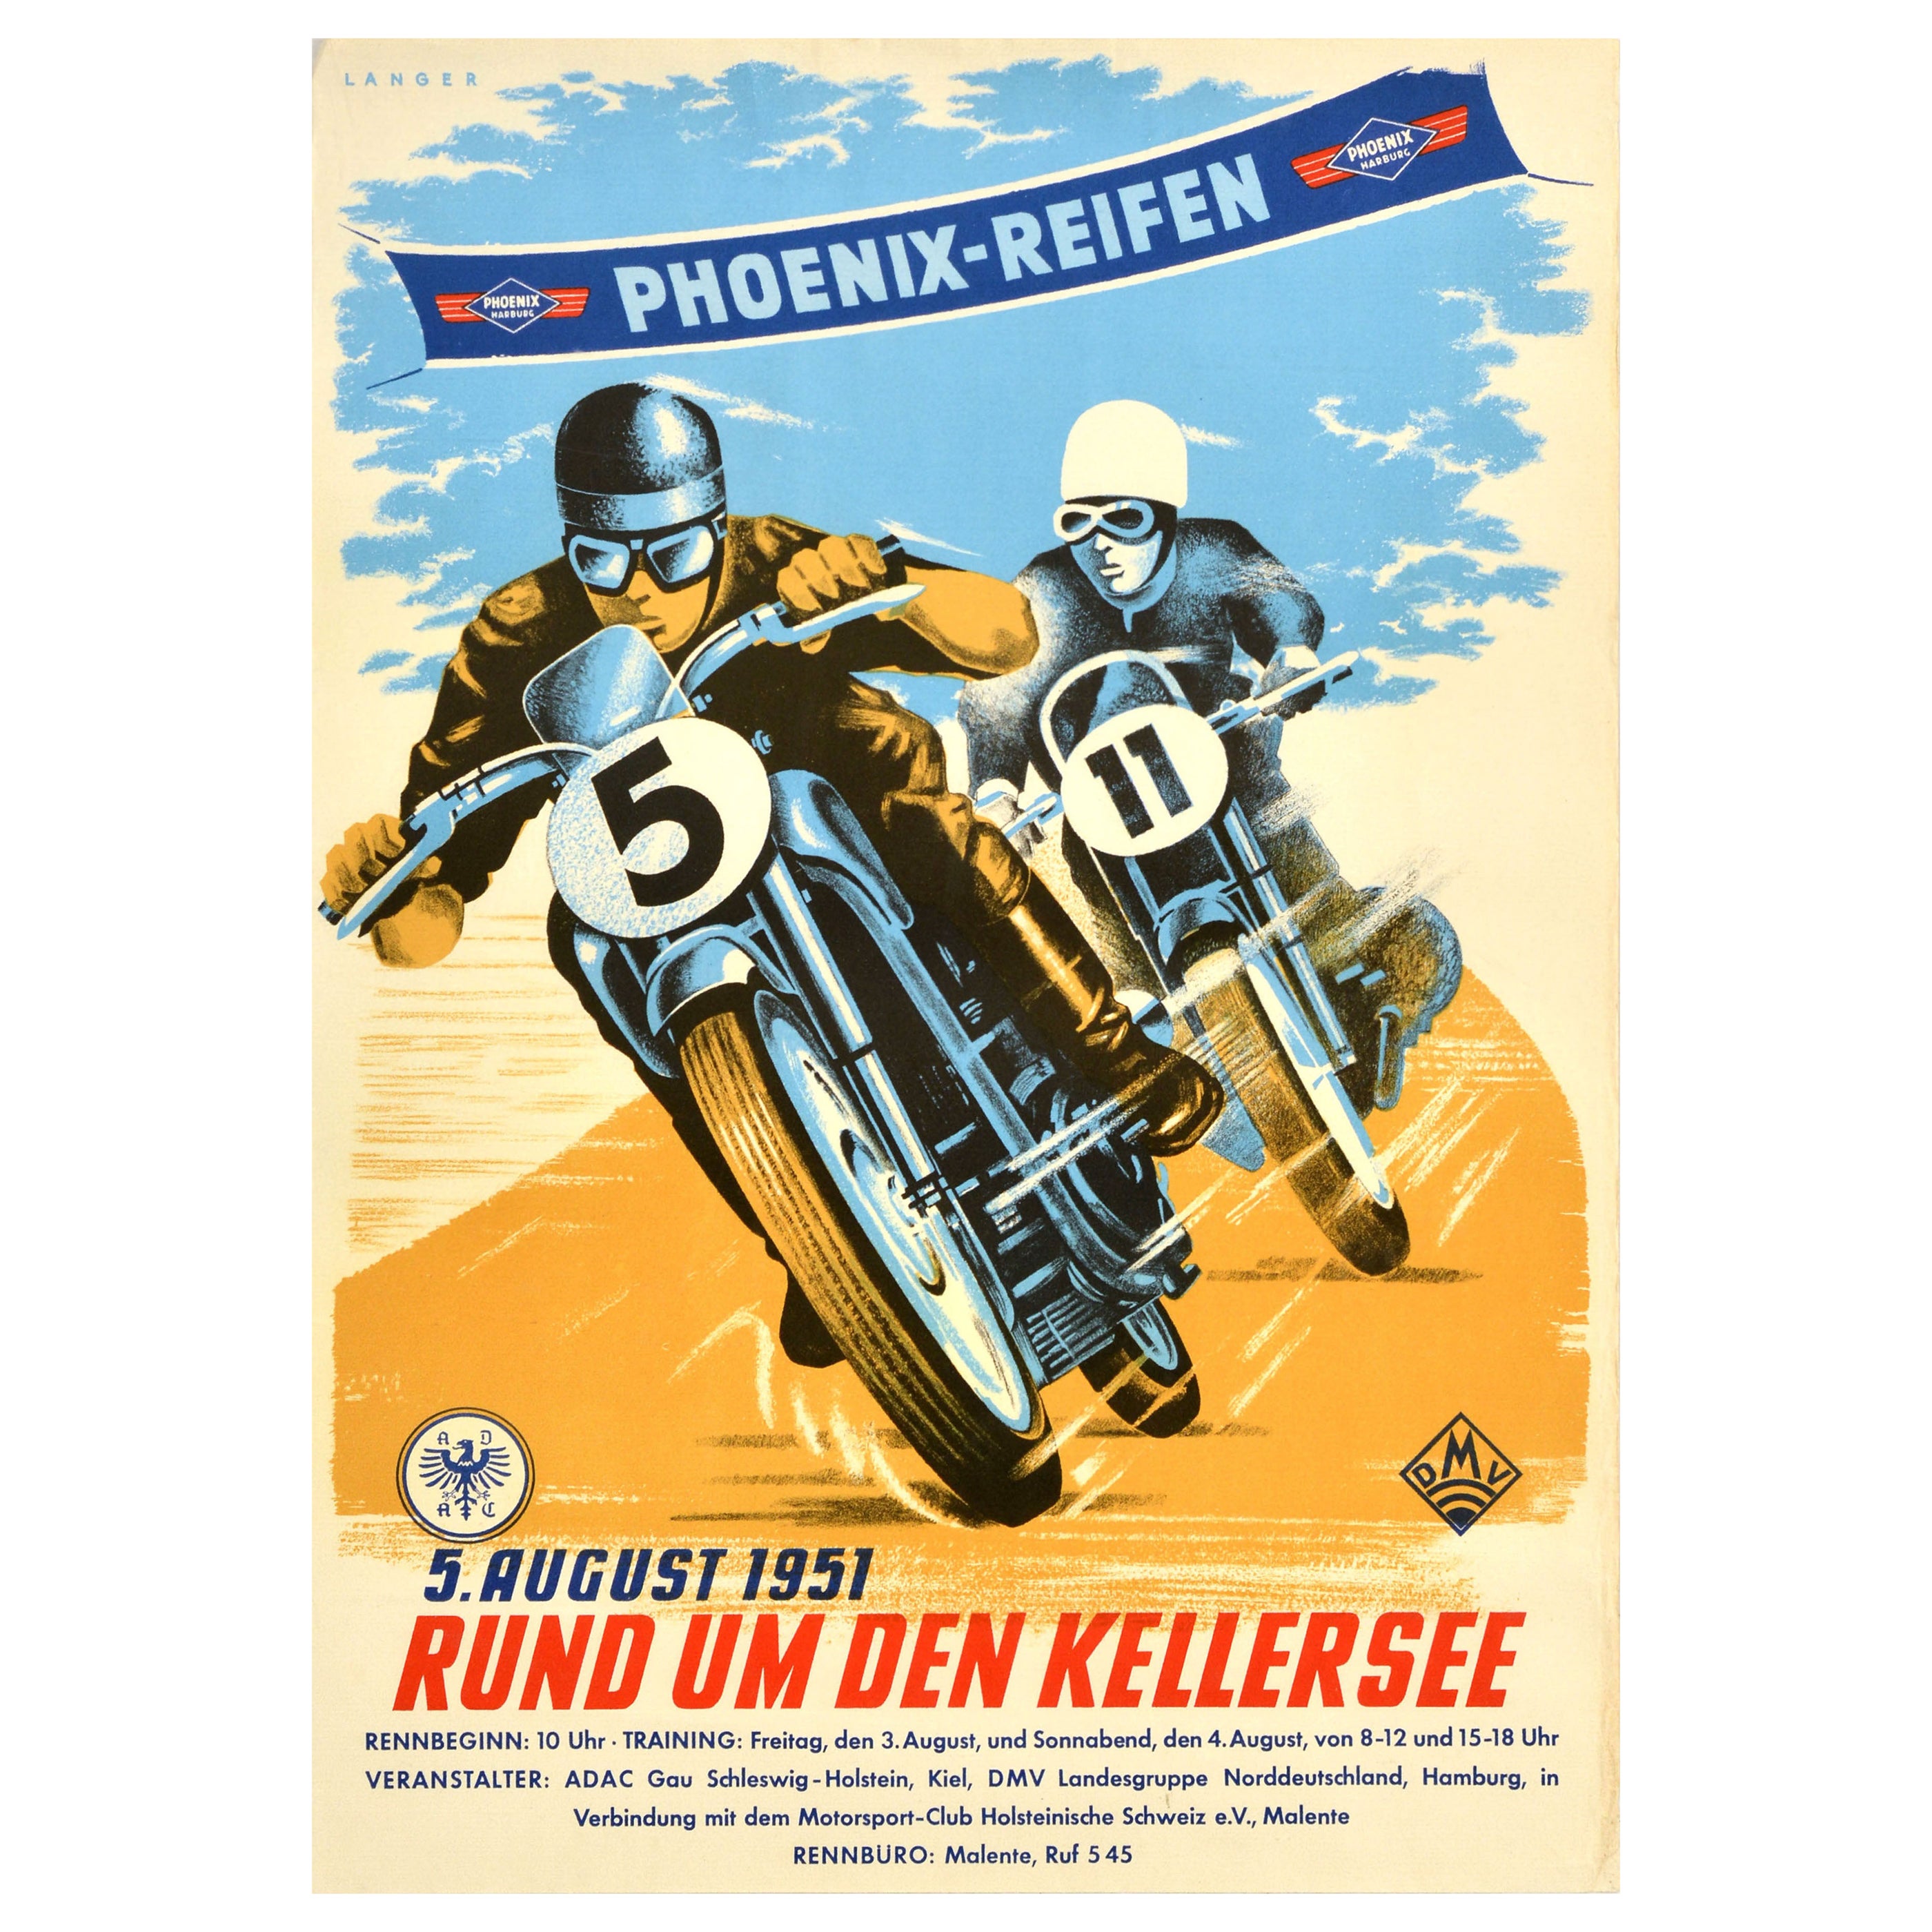 Original Vintage Motorsport Poster Motorcycle Race Phoenix Reifen 1951 Kellersee For Sale